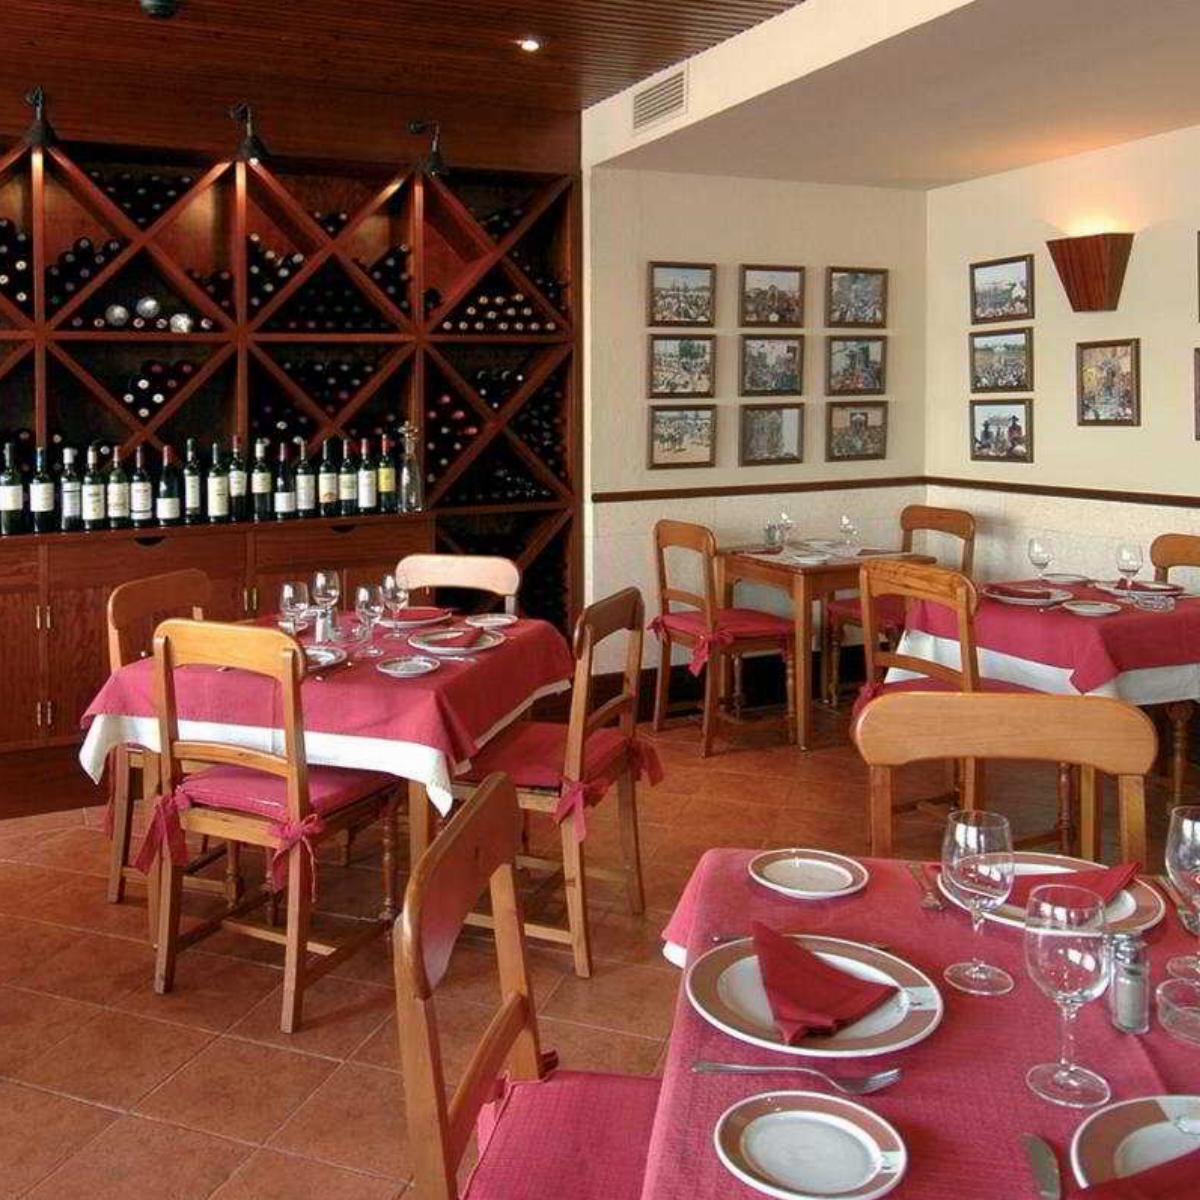 Oasis Islantilla Hotel Costa De La Luz (Huelva) Spain